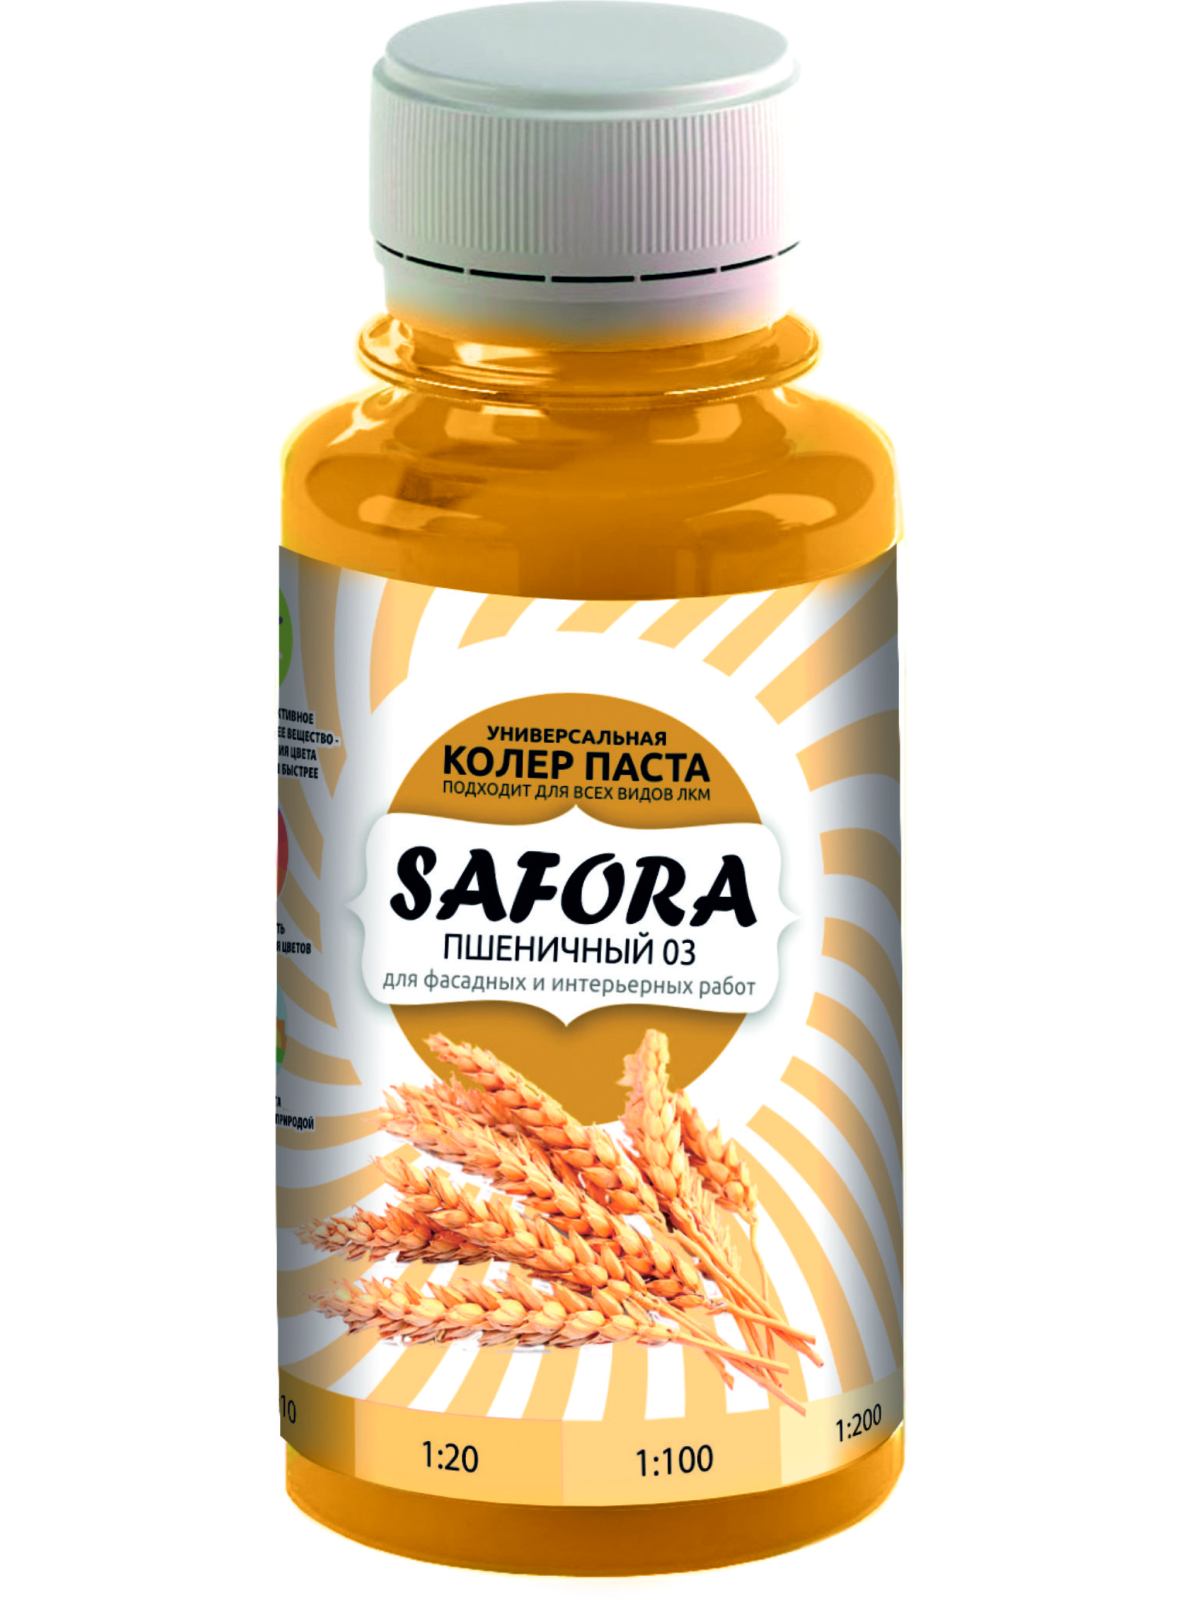 Колеровочная паста SAFORA 03 пшеничный, 100 мл колеровочная паста safora 19 мятный 100 мл